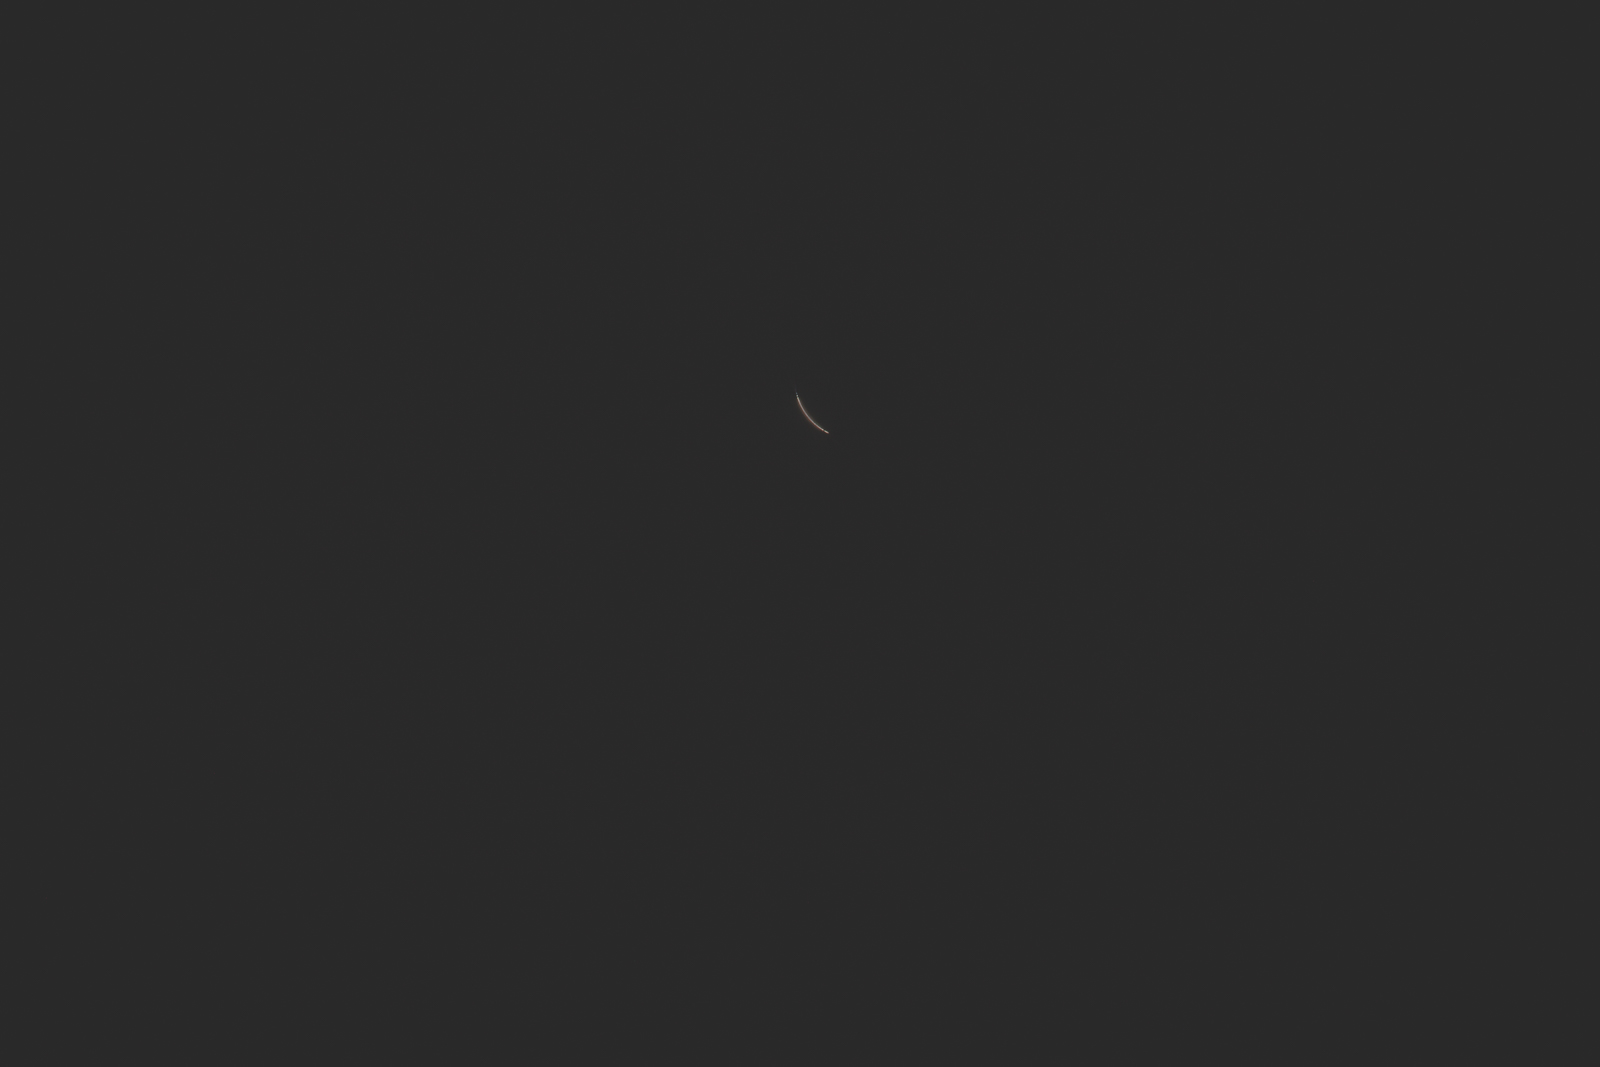 Eclipse2017-blog-0403.jpg